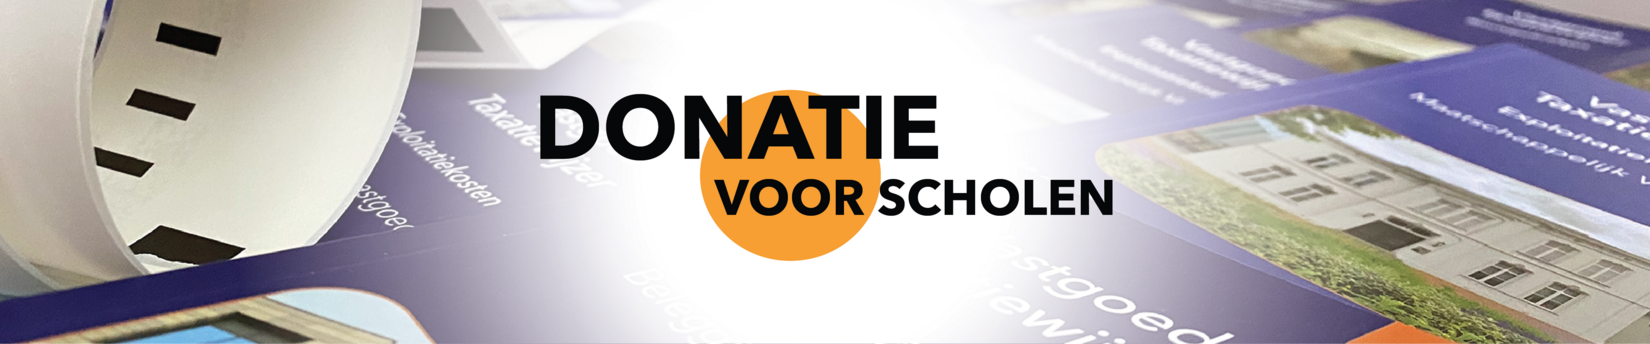 homebanner-kva-scholen-donatie_nl.png